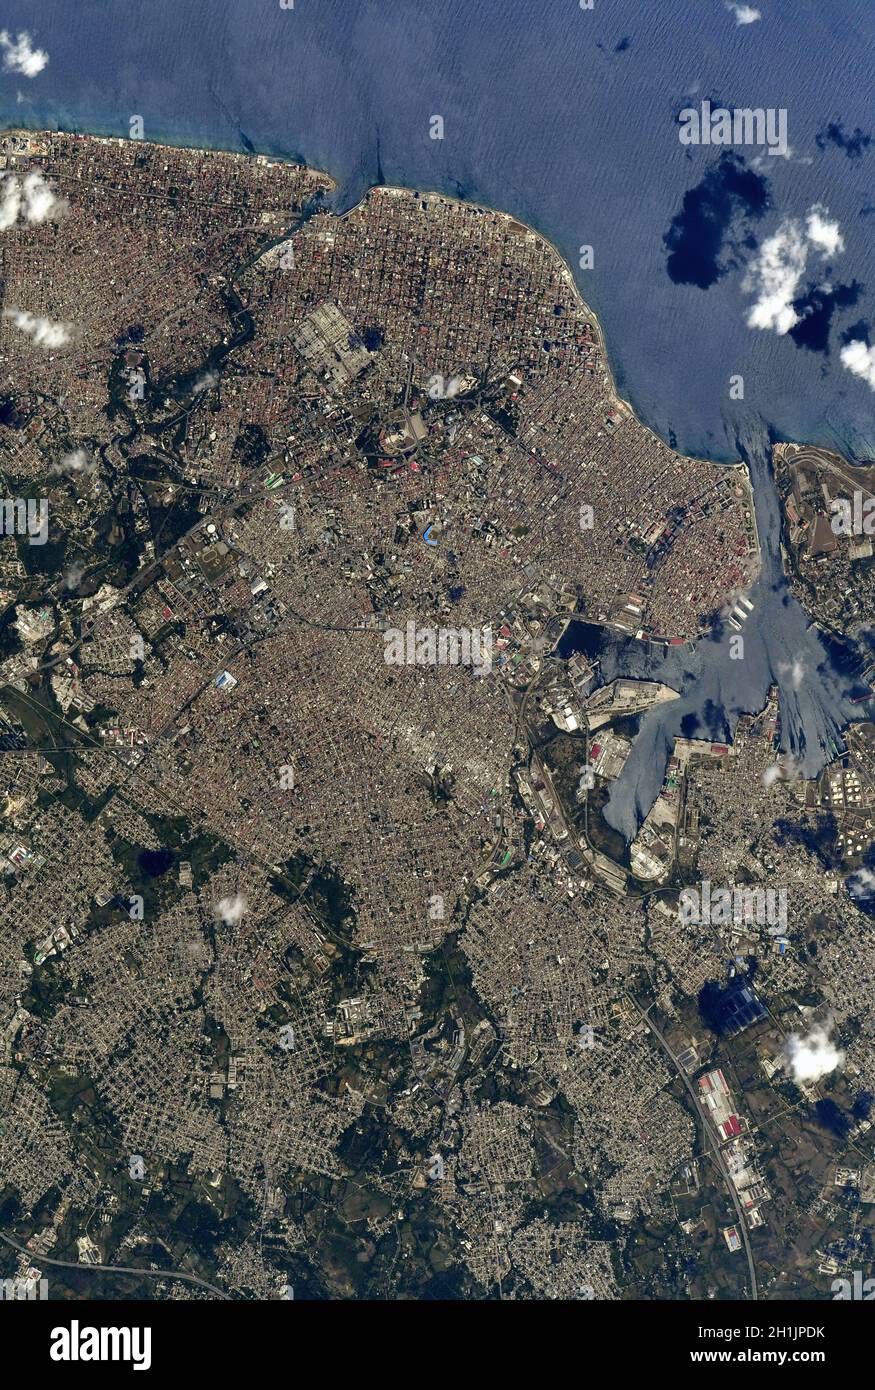 Ein Blick auf die Erde von der Internationalen Raumstation: Kuba und Havanna. Kubanische Küste. Eine optimierte und digital verbesserte Version eines NASA/ESA-Bildes. Obligatorische Gutschrift: NASA/ESA/T. Pesquet. Hinweis: Nutzungseinschränkungen: Nicht als Billigung zu präsentieren. Stockfoto